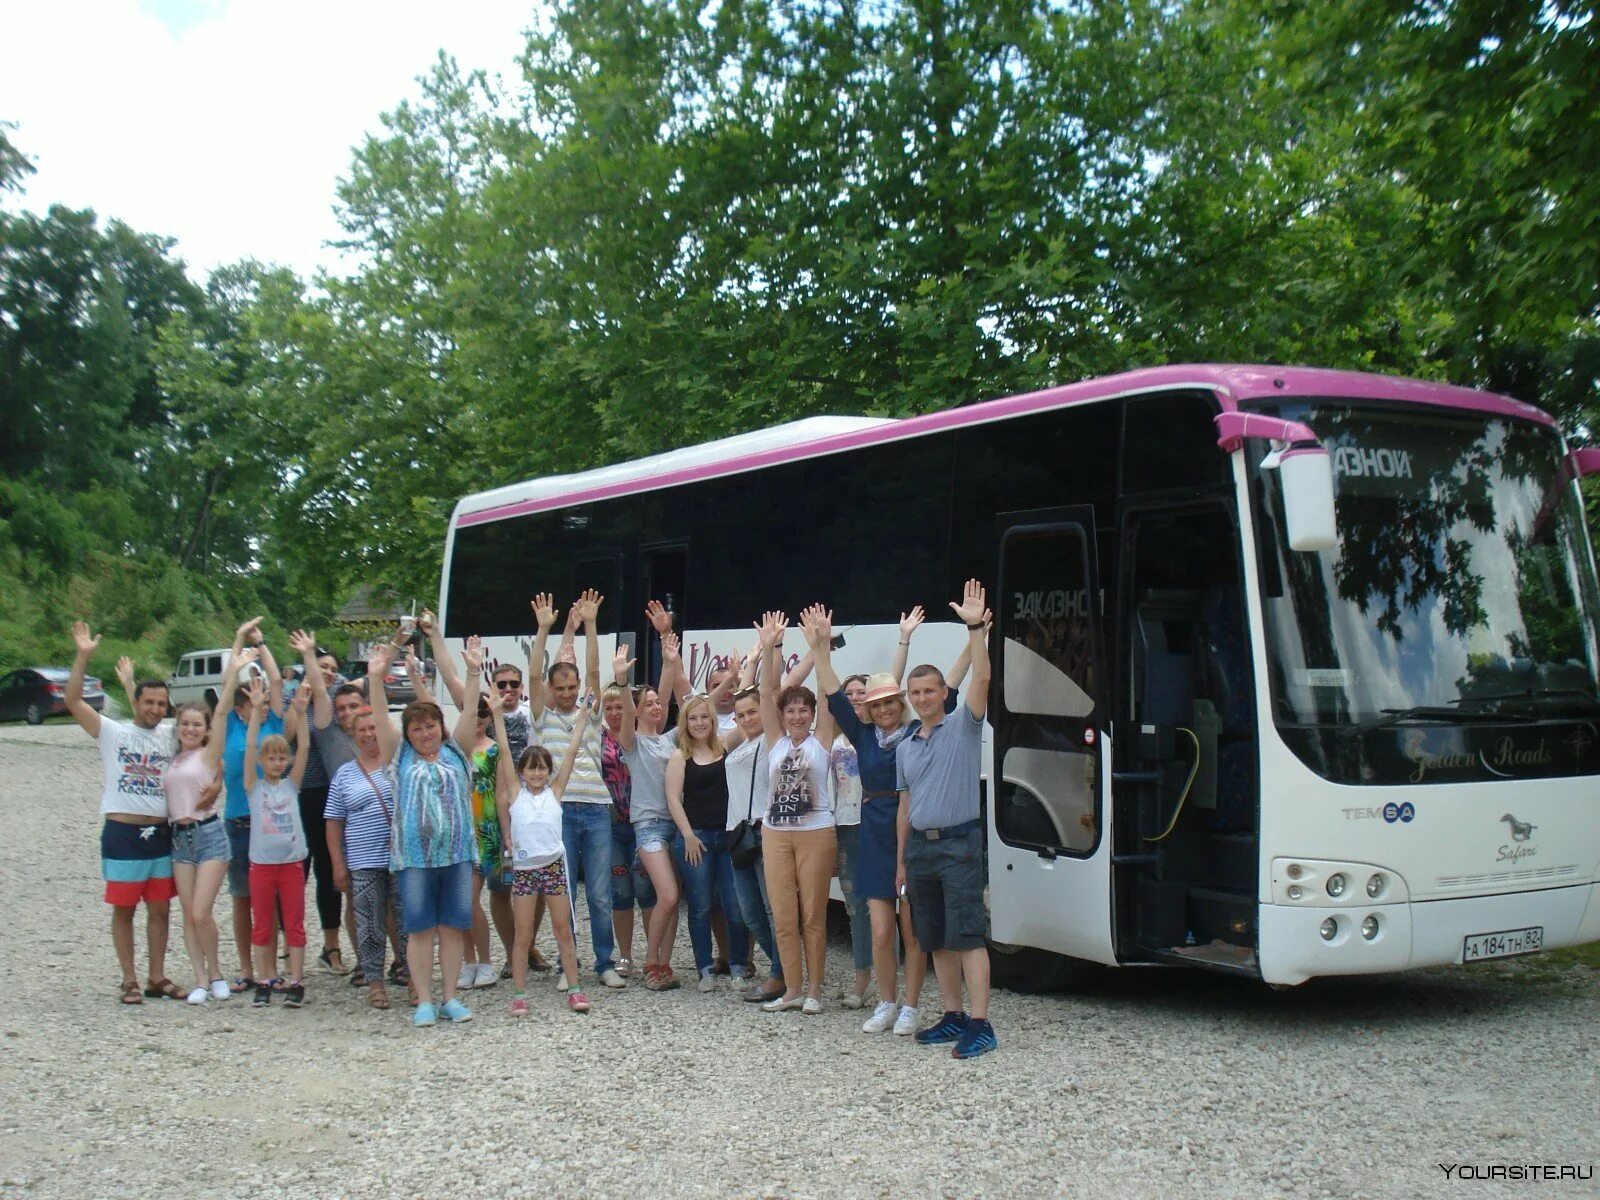 Август автобусные туры. Экскурсия на автобусе. Автобусные туры. Экскурсионные автобусы в Абхазии. Туристические автобусы в Абхазии.